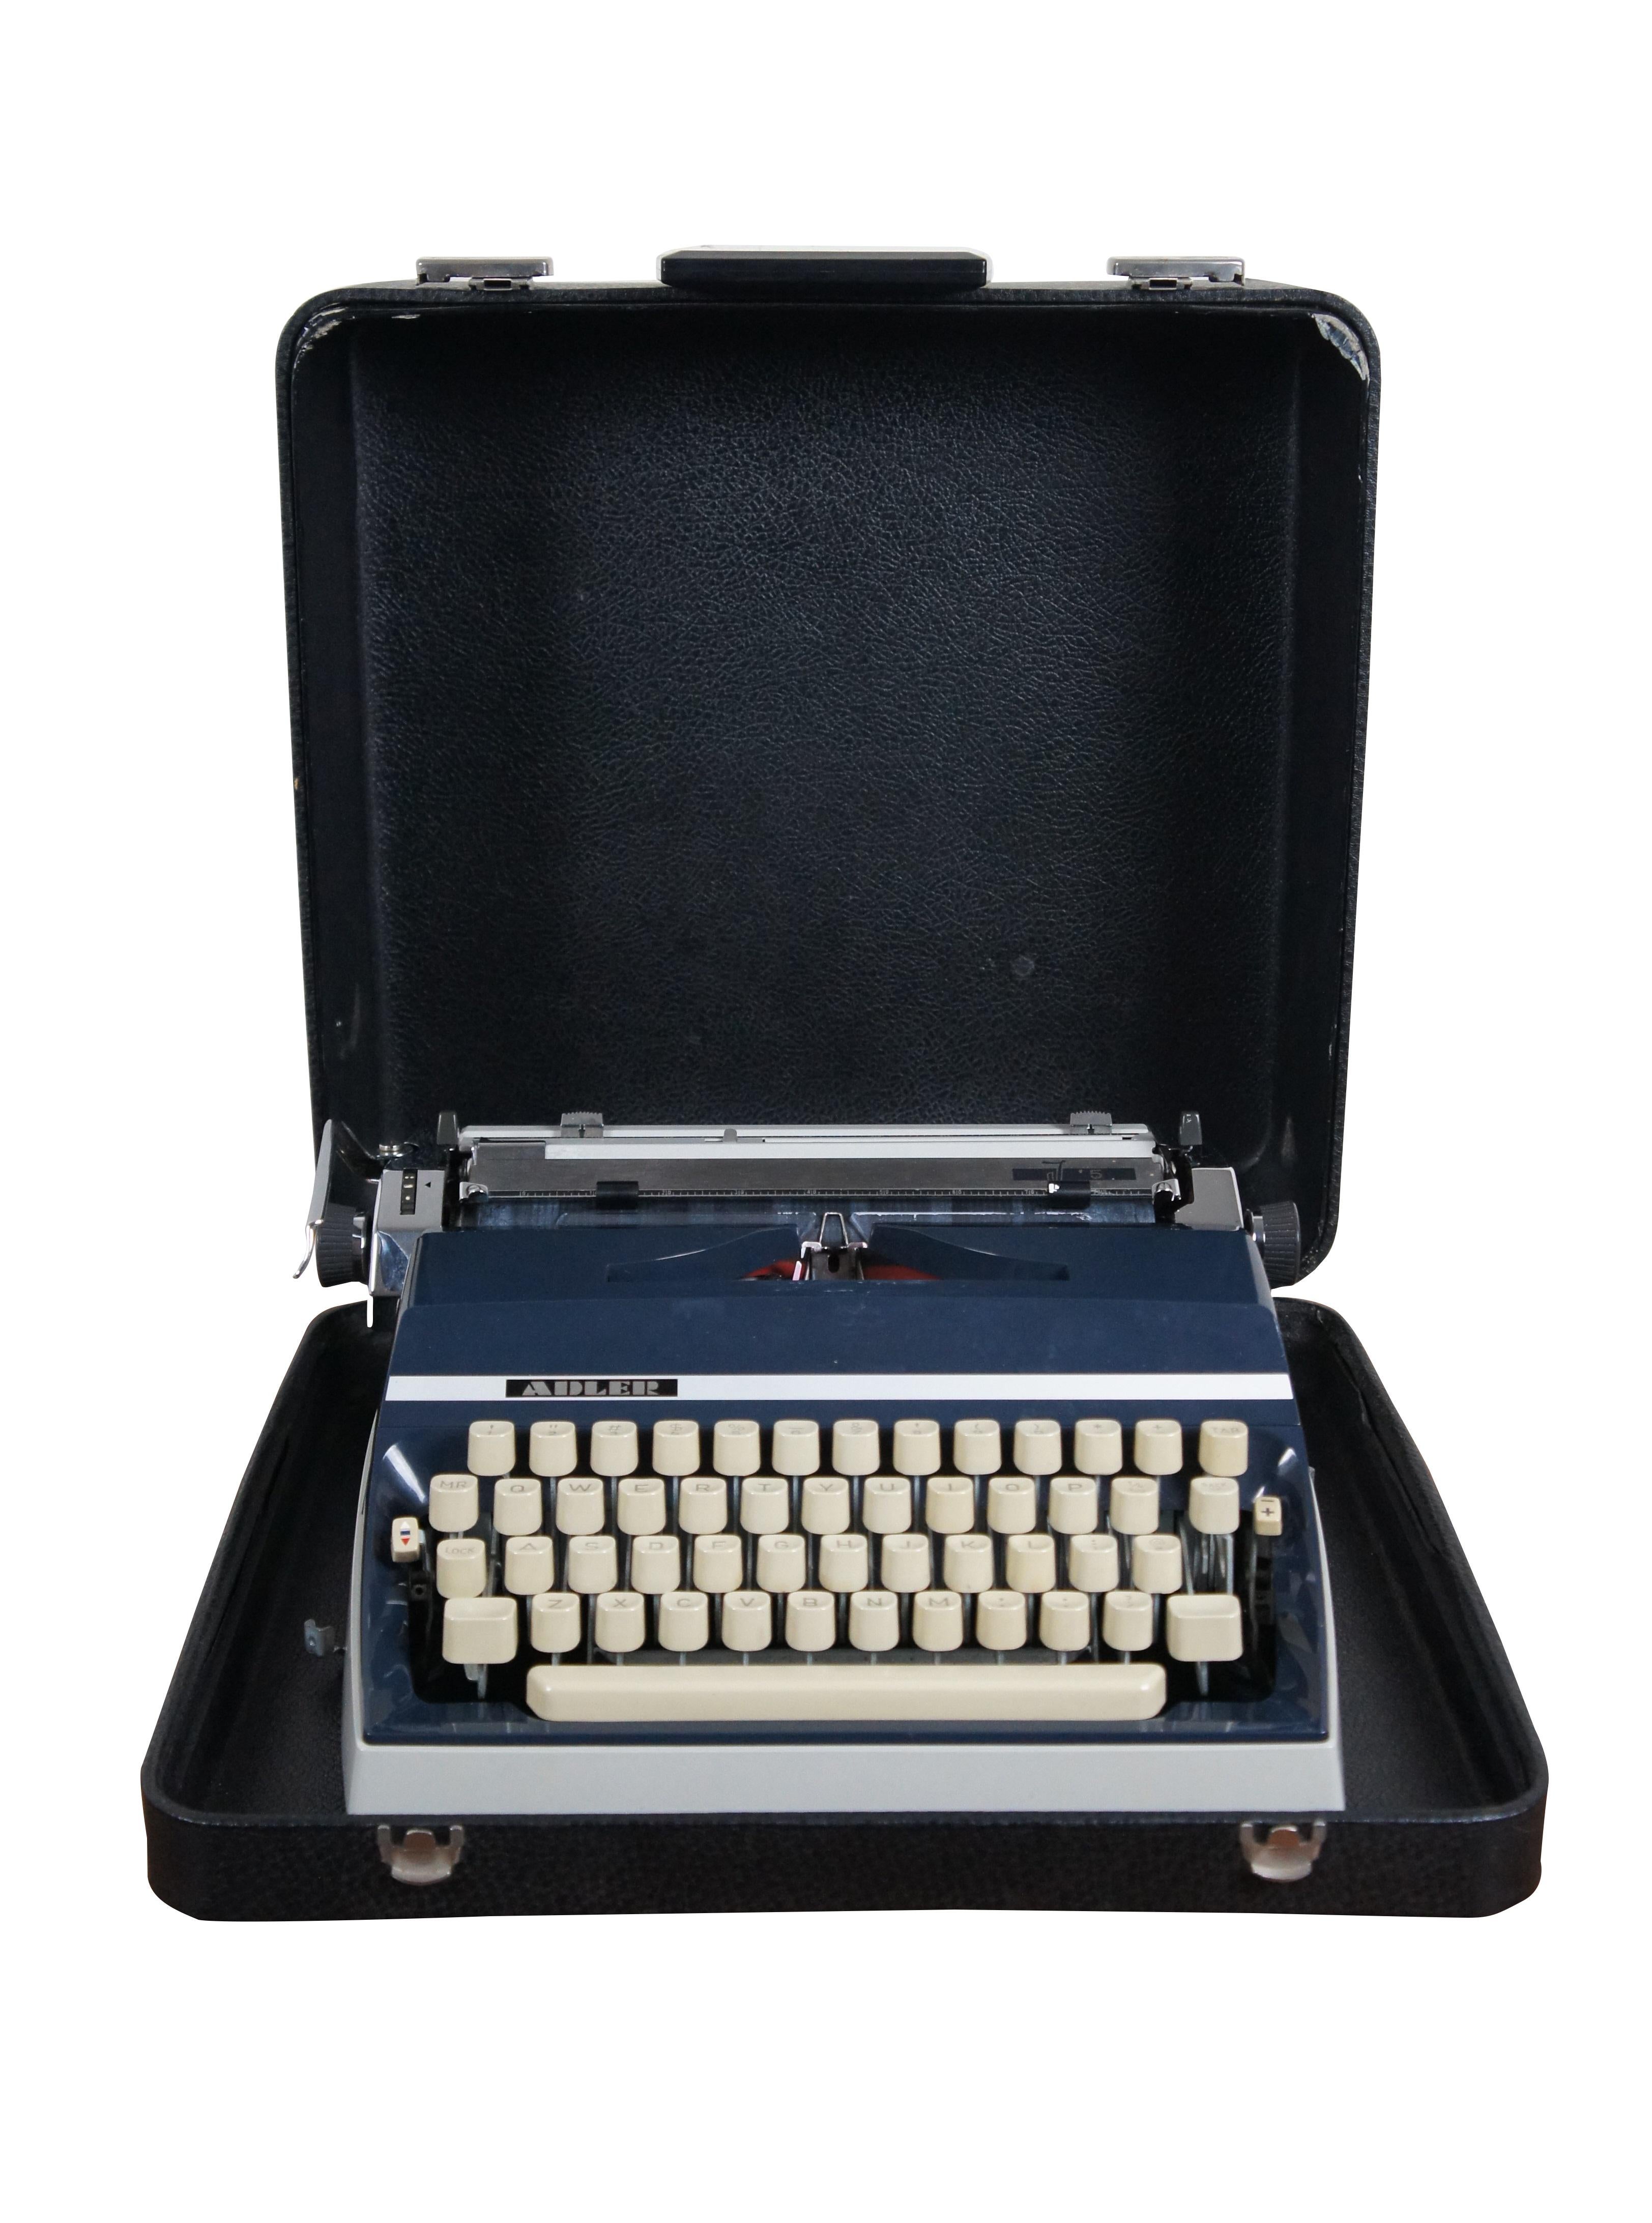 adler schreibmaschine 1970